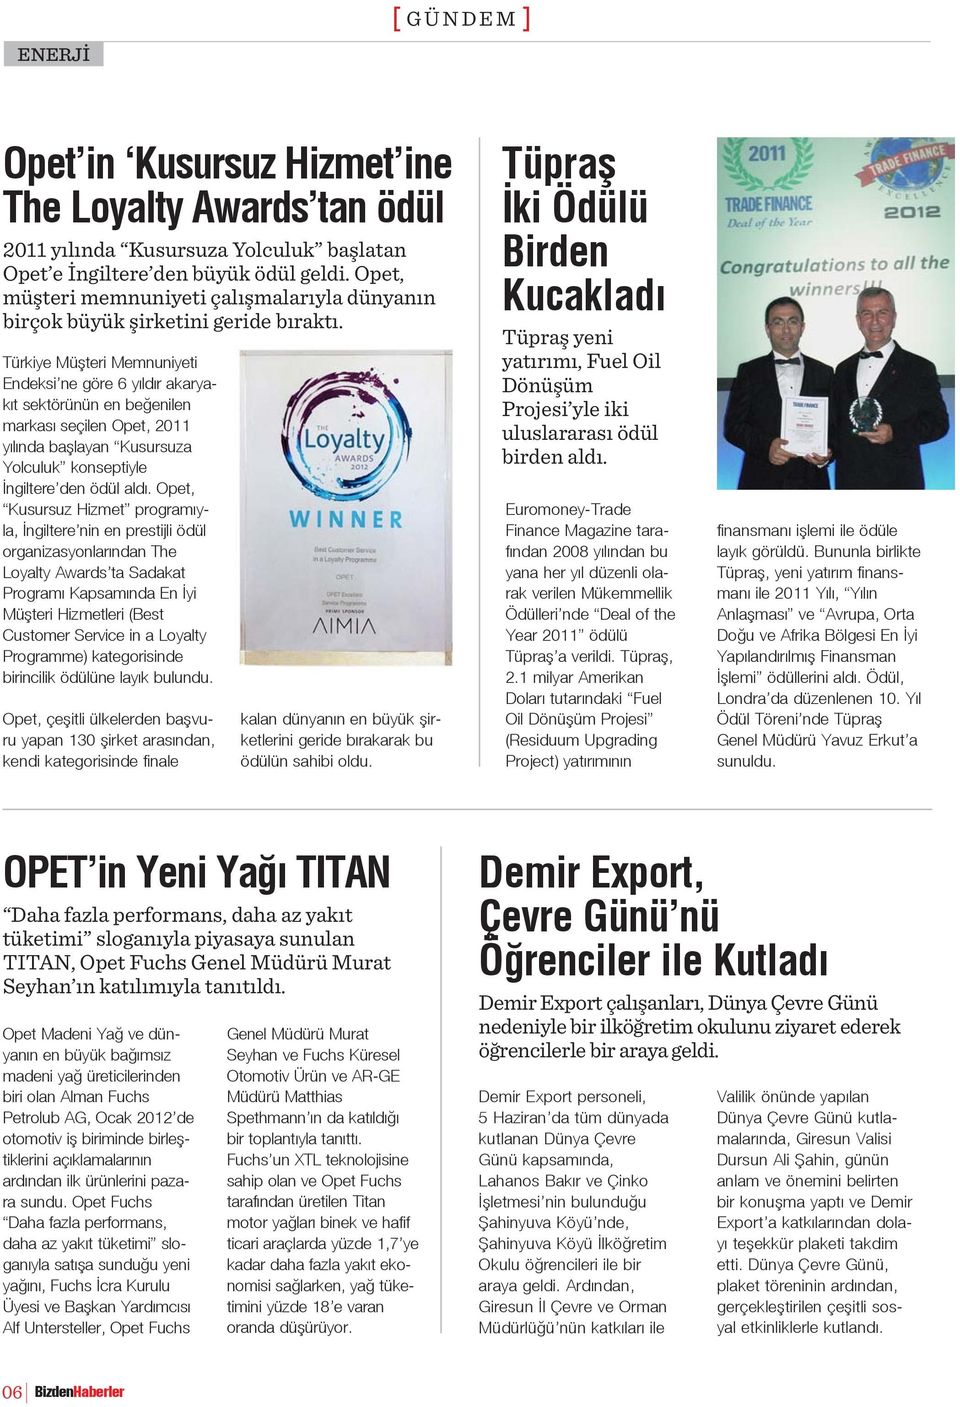 Türkiye Müşteri Memnuniyeti Endeksi ne göre 6 yıldır akaryakıt sektörünün en beğenilen markası seçilen Opet, 2011 yılında başlayan Kusursuza Yolculuk konseptiyle İngiltere den ödül aldı.